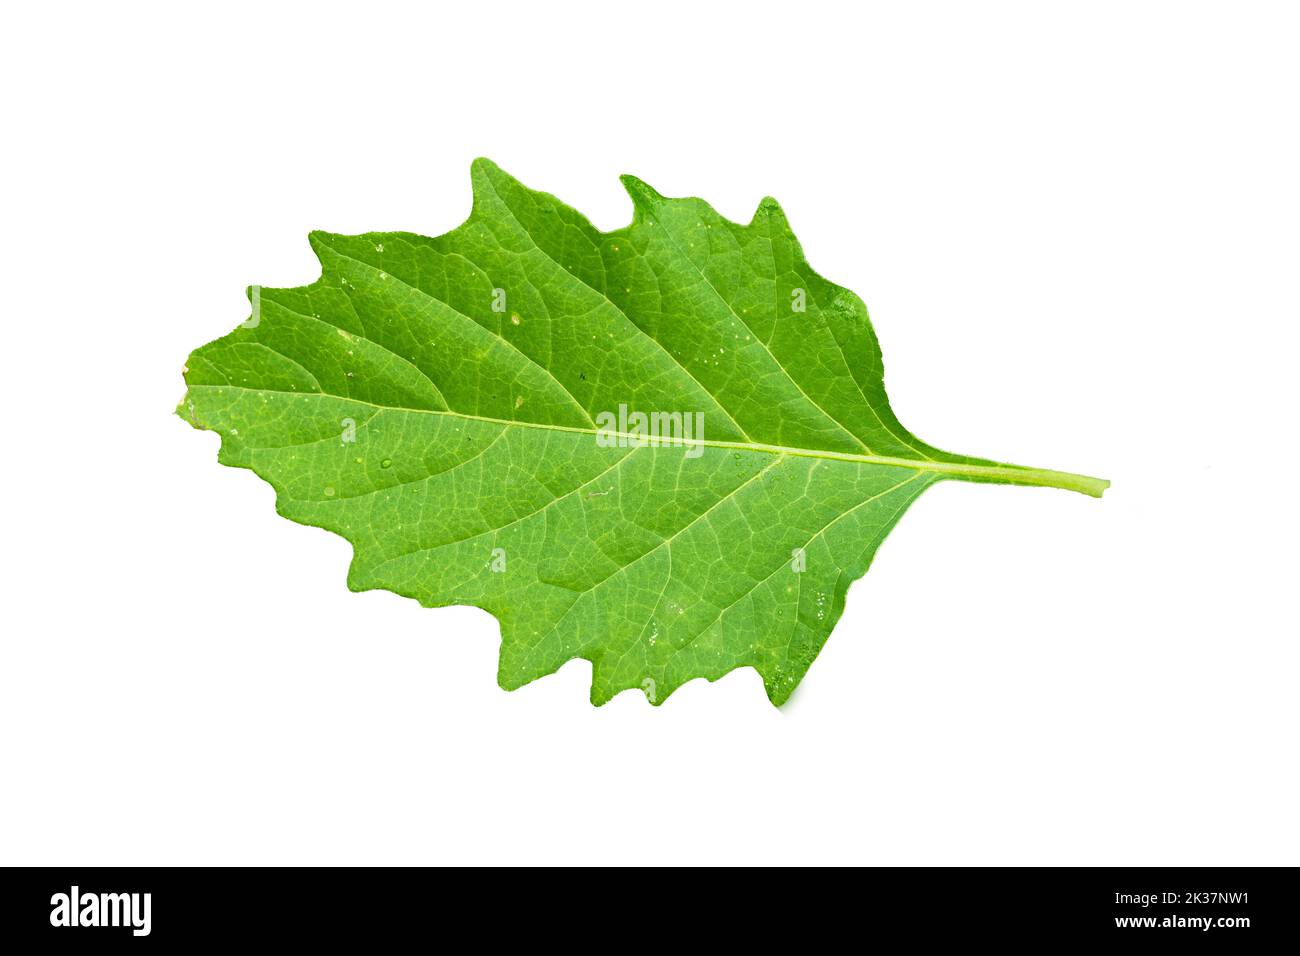 Primo piano delle foglie verdi di Nightshade comune e dei bordi frastagliati con il contorno dettagliato della foglia, isolato su uno sfondo bianco Foto Stock